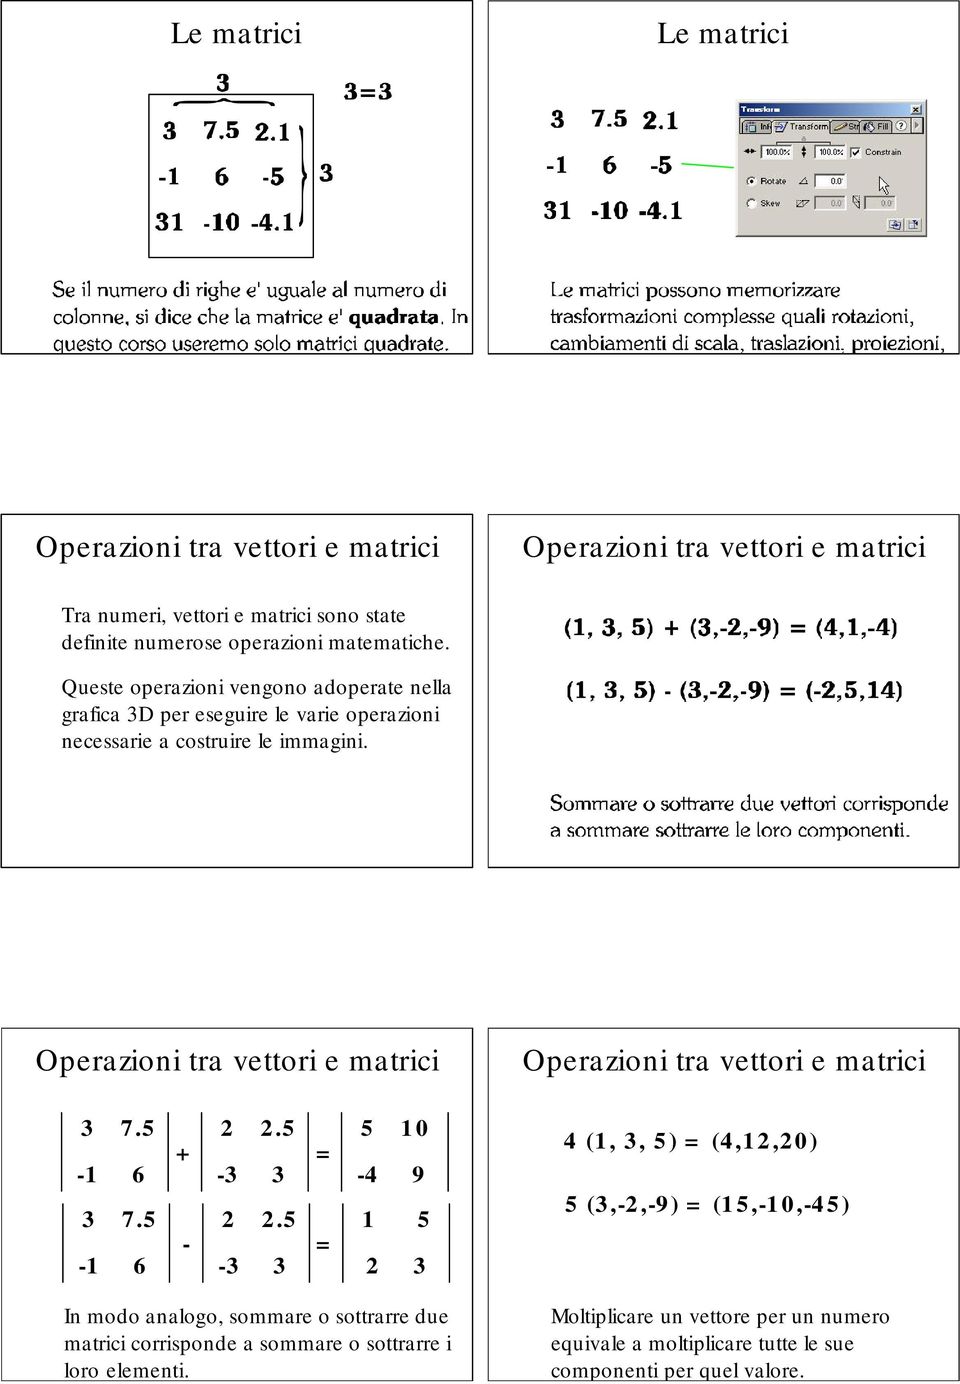 Operaioni tra vettori e matrici Operaioni tra vettori e matrici 2 2.5 + - 2 2.